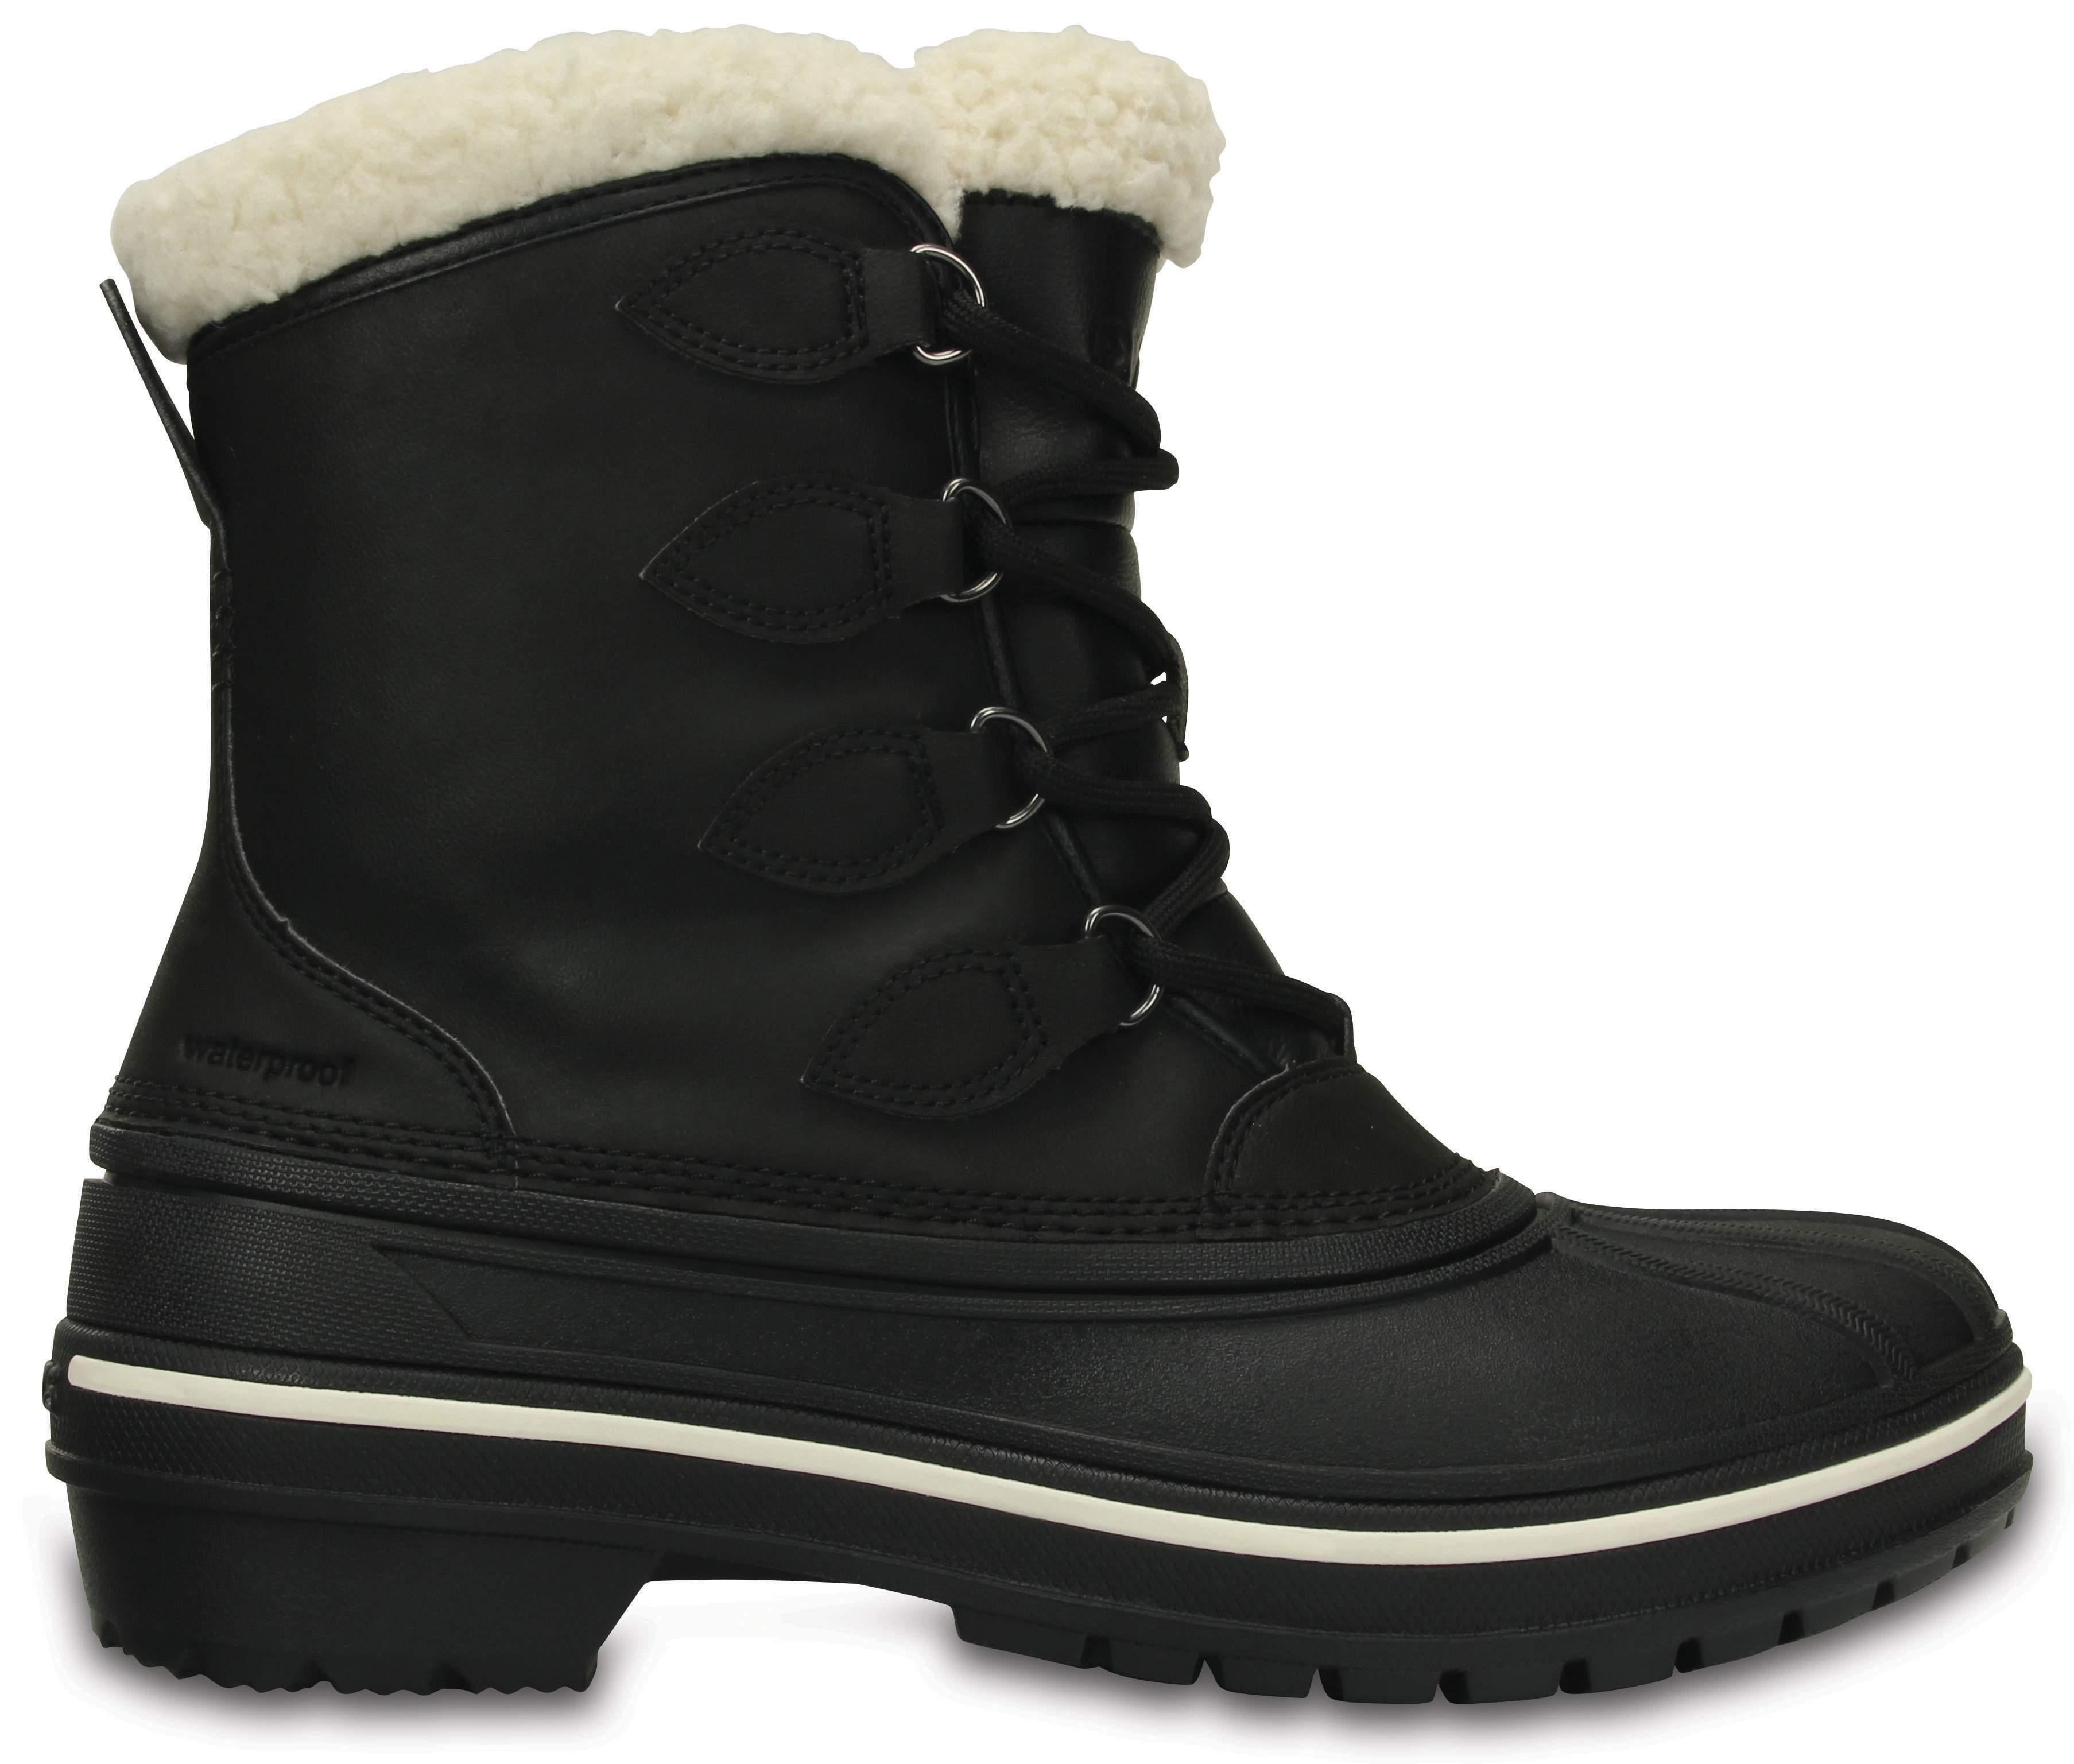 crocs black boots